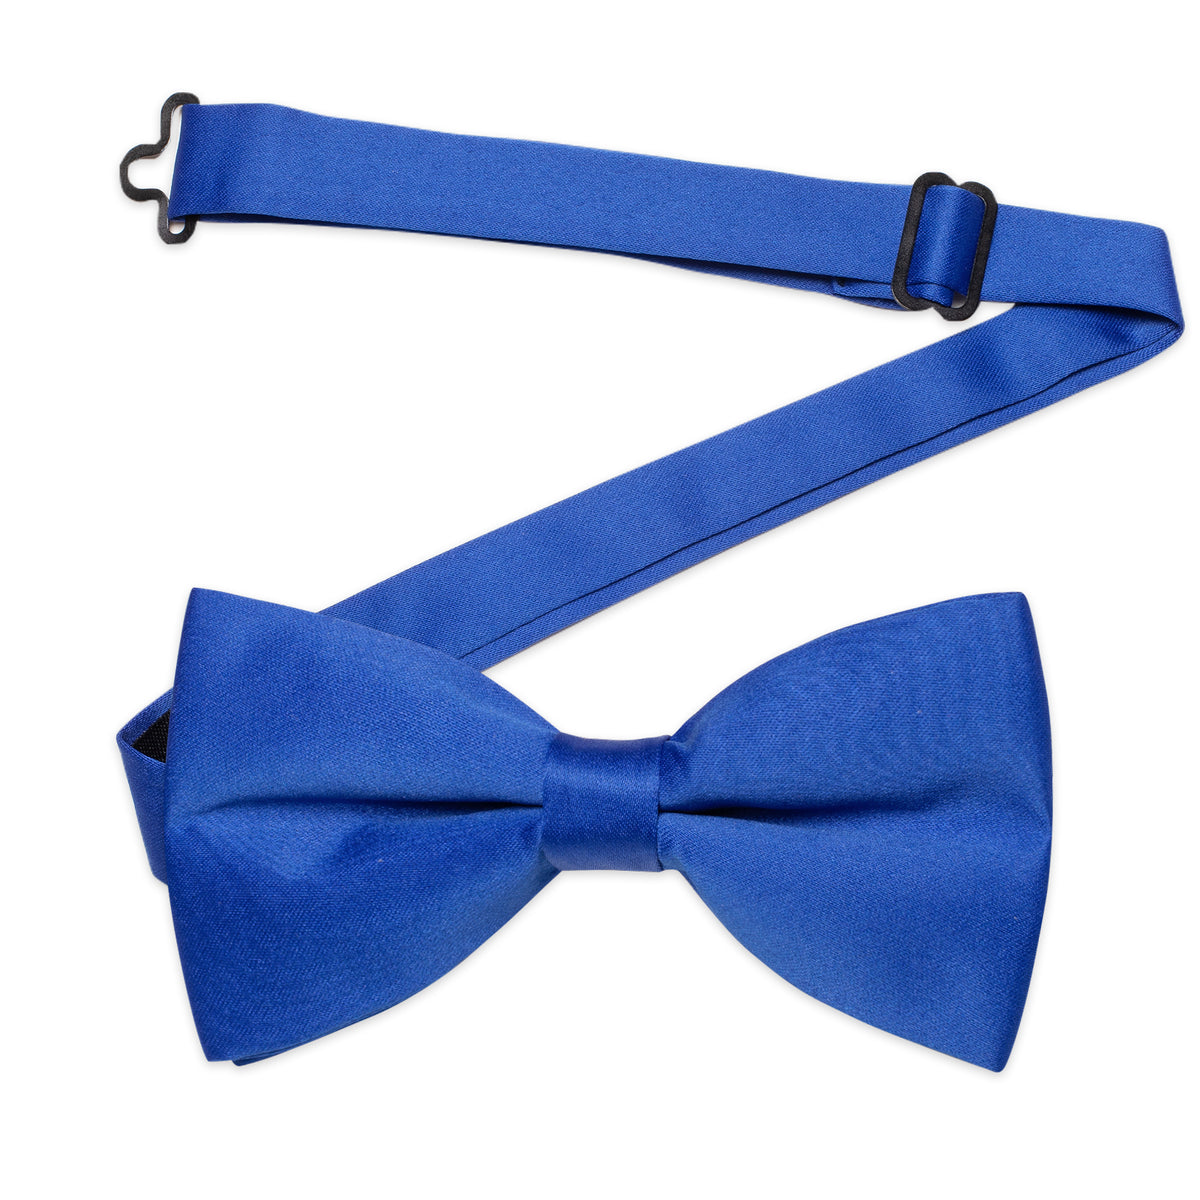 Wedding Necktie Royal Blue Solid Pre-tied Bow Tie for Men